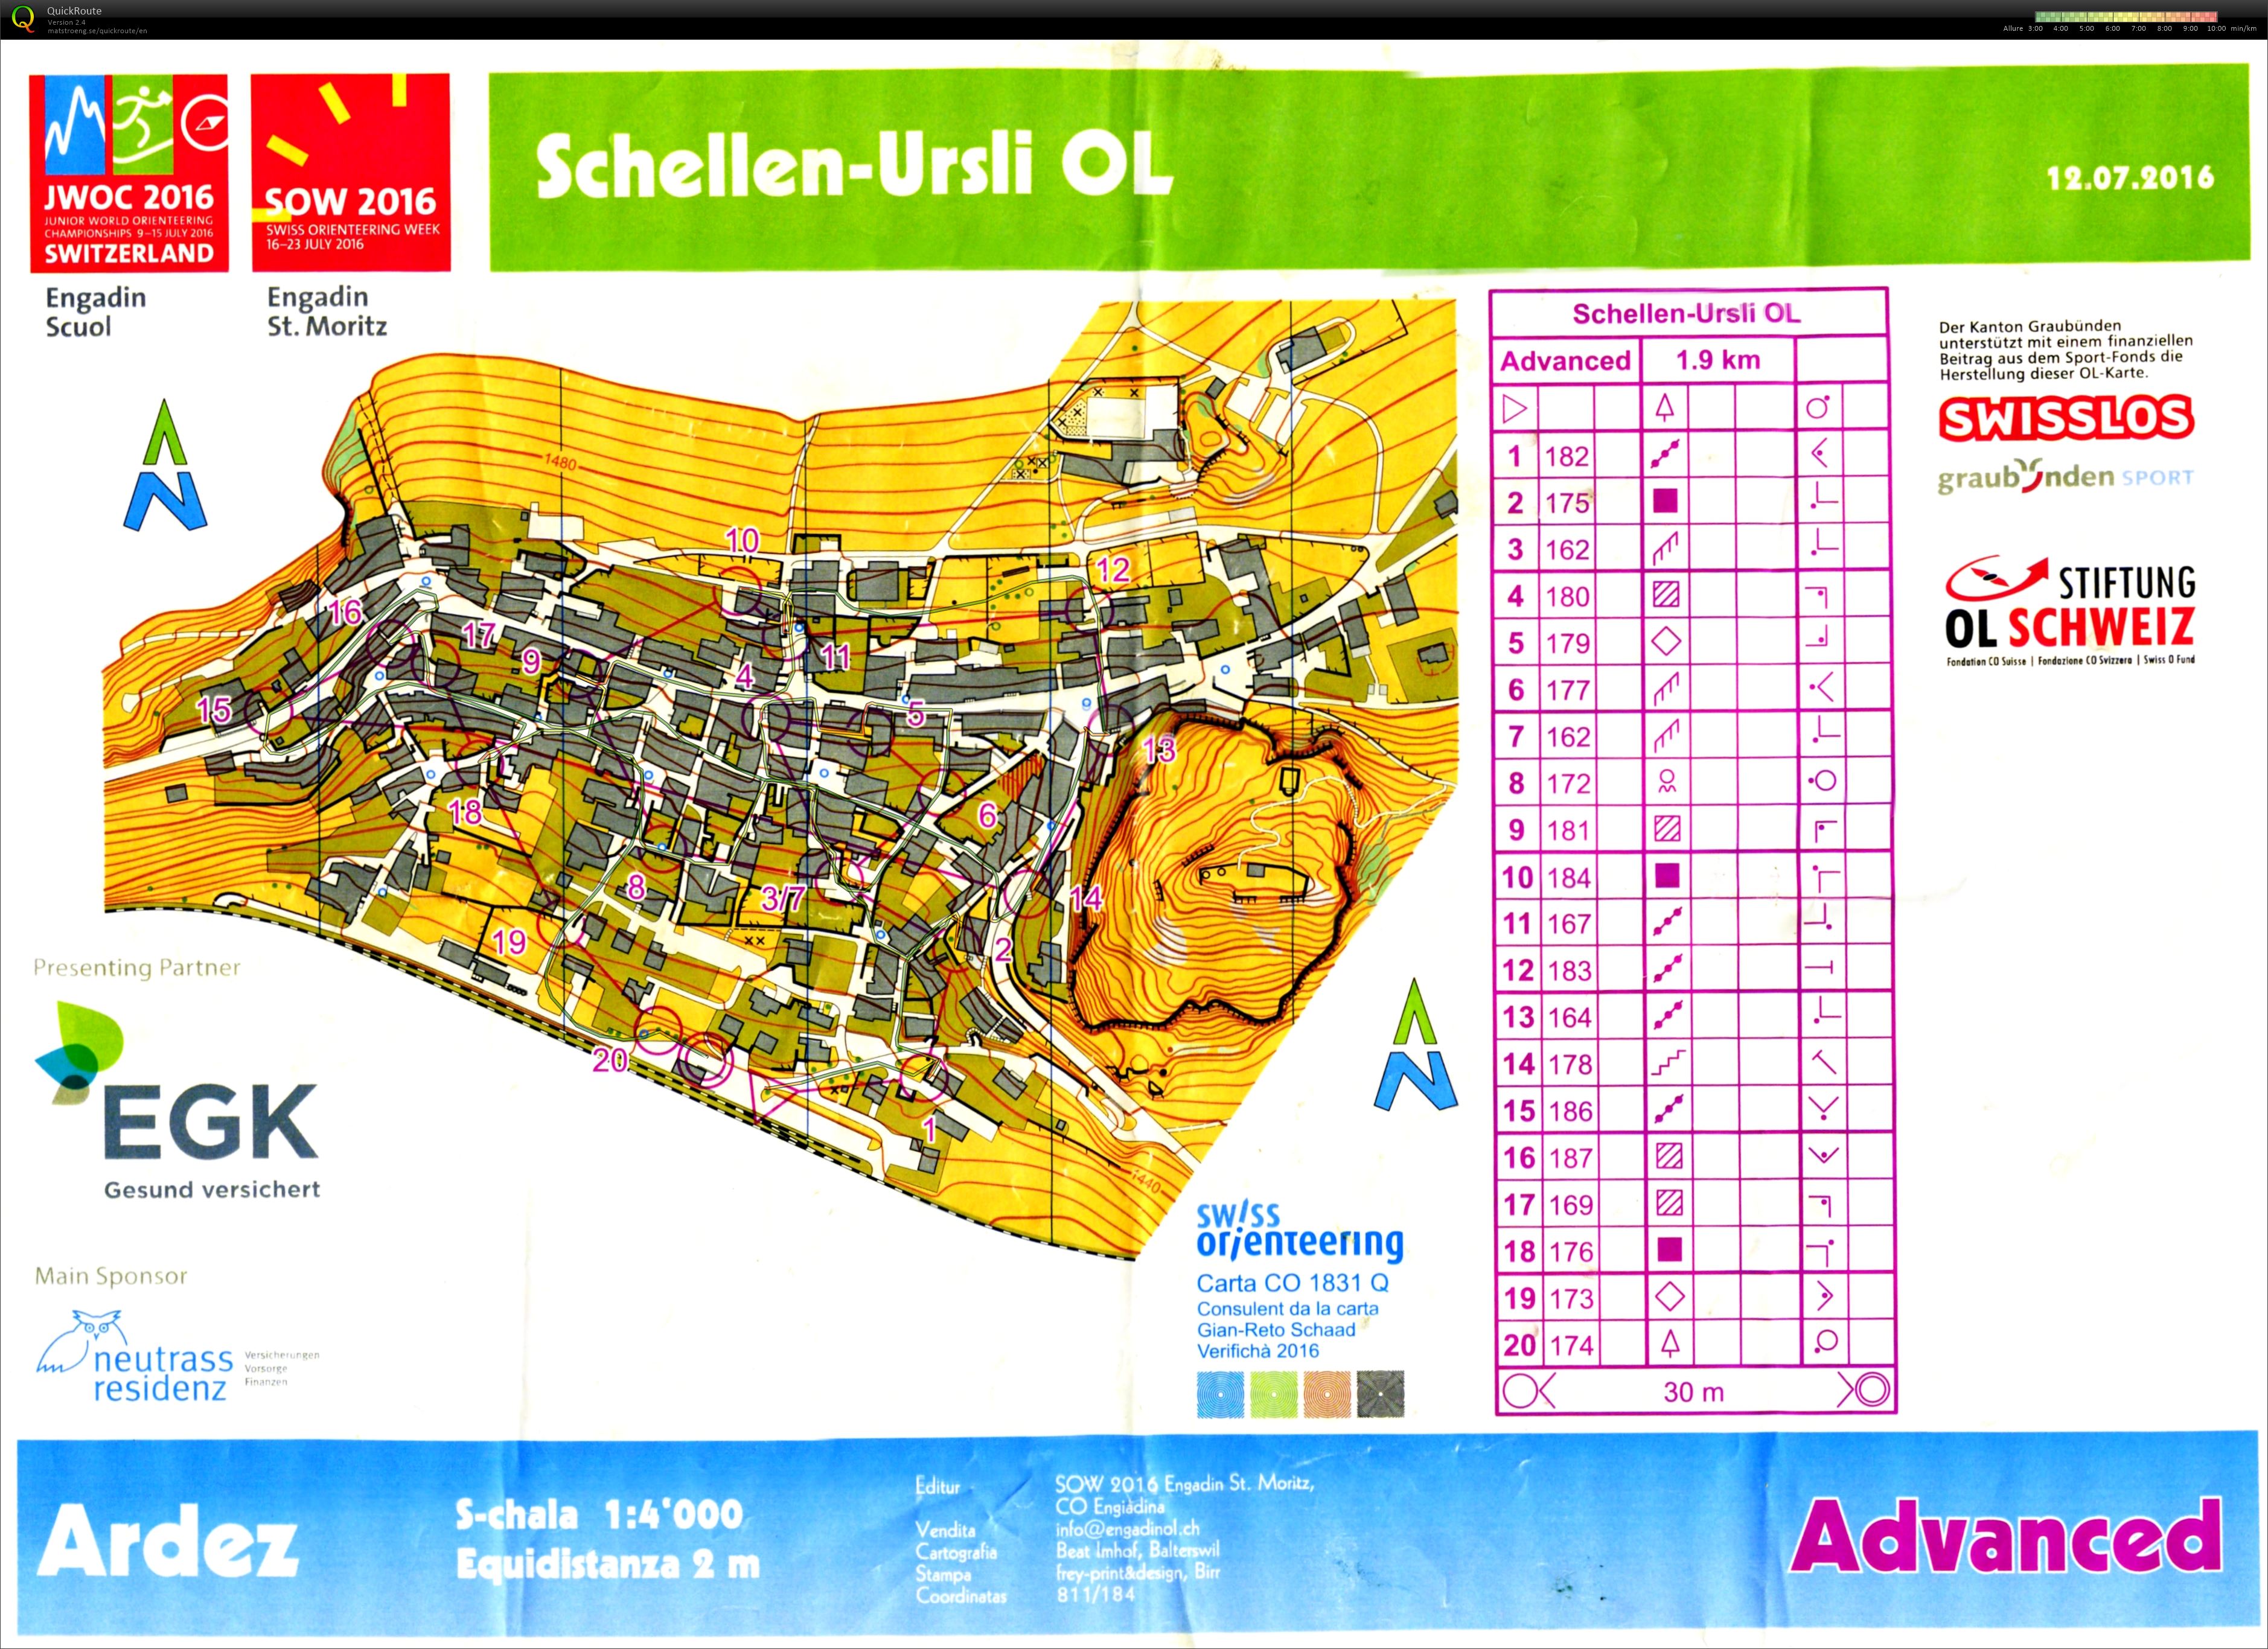 Schellen-Ursli OL (12/07/2016)